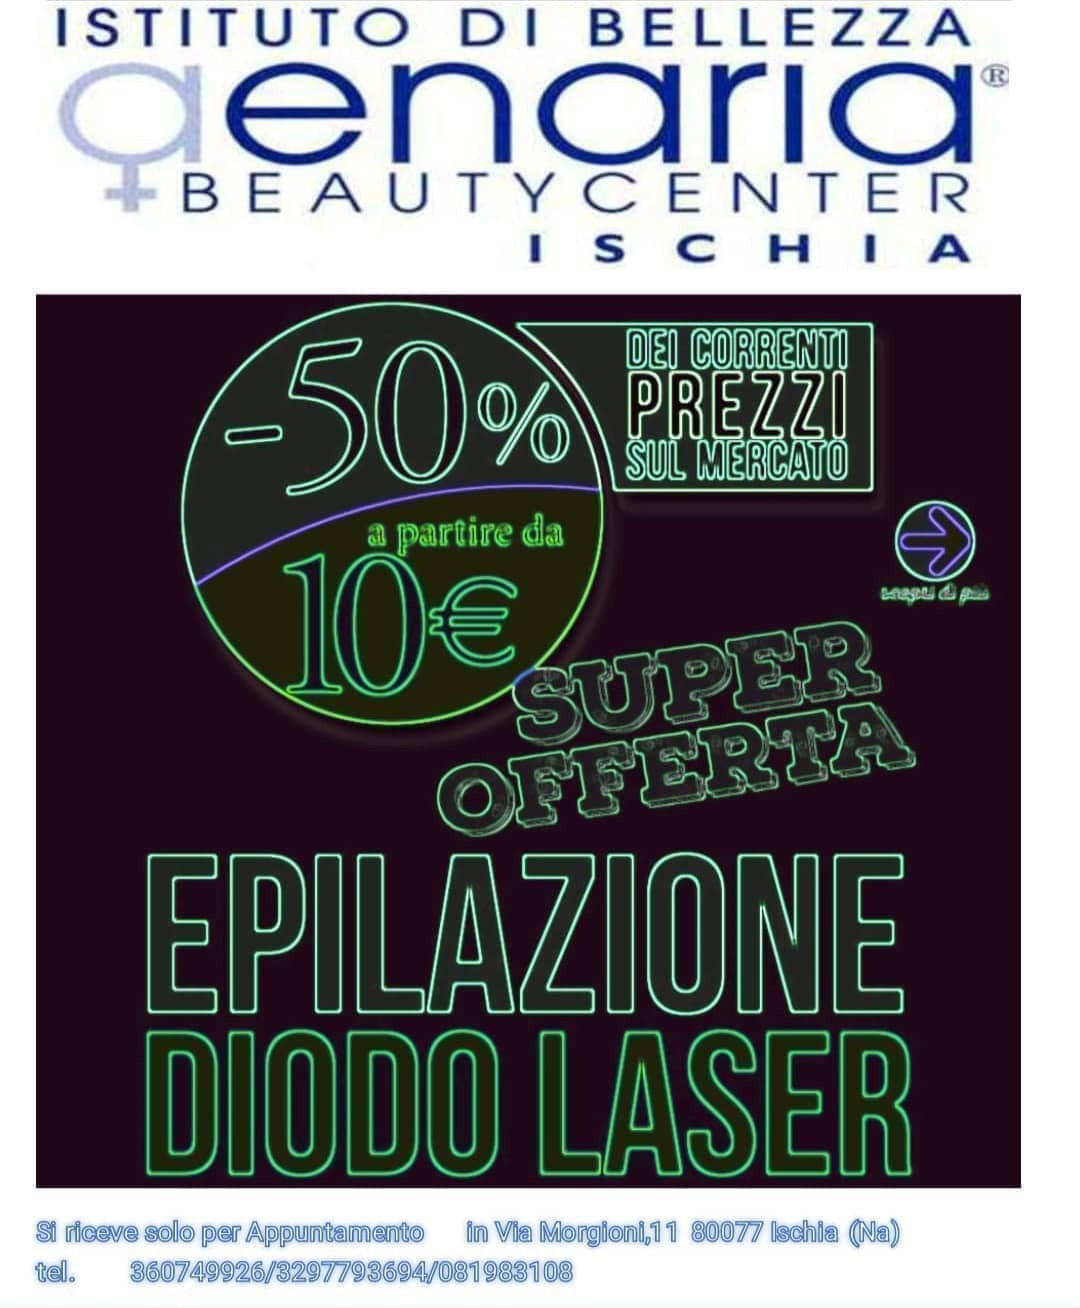 epilazione diodo laser